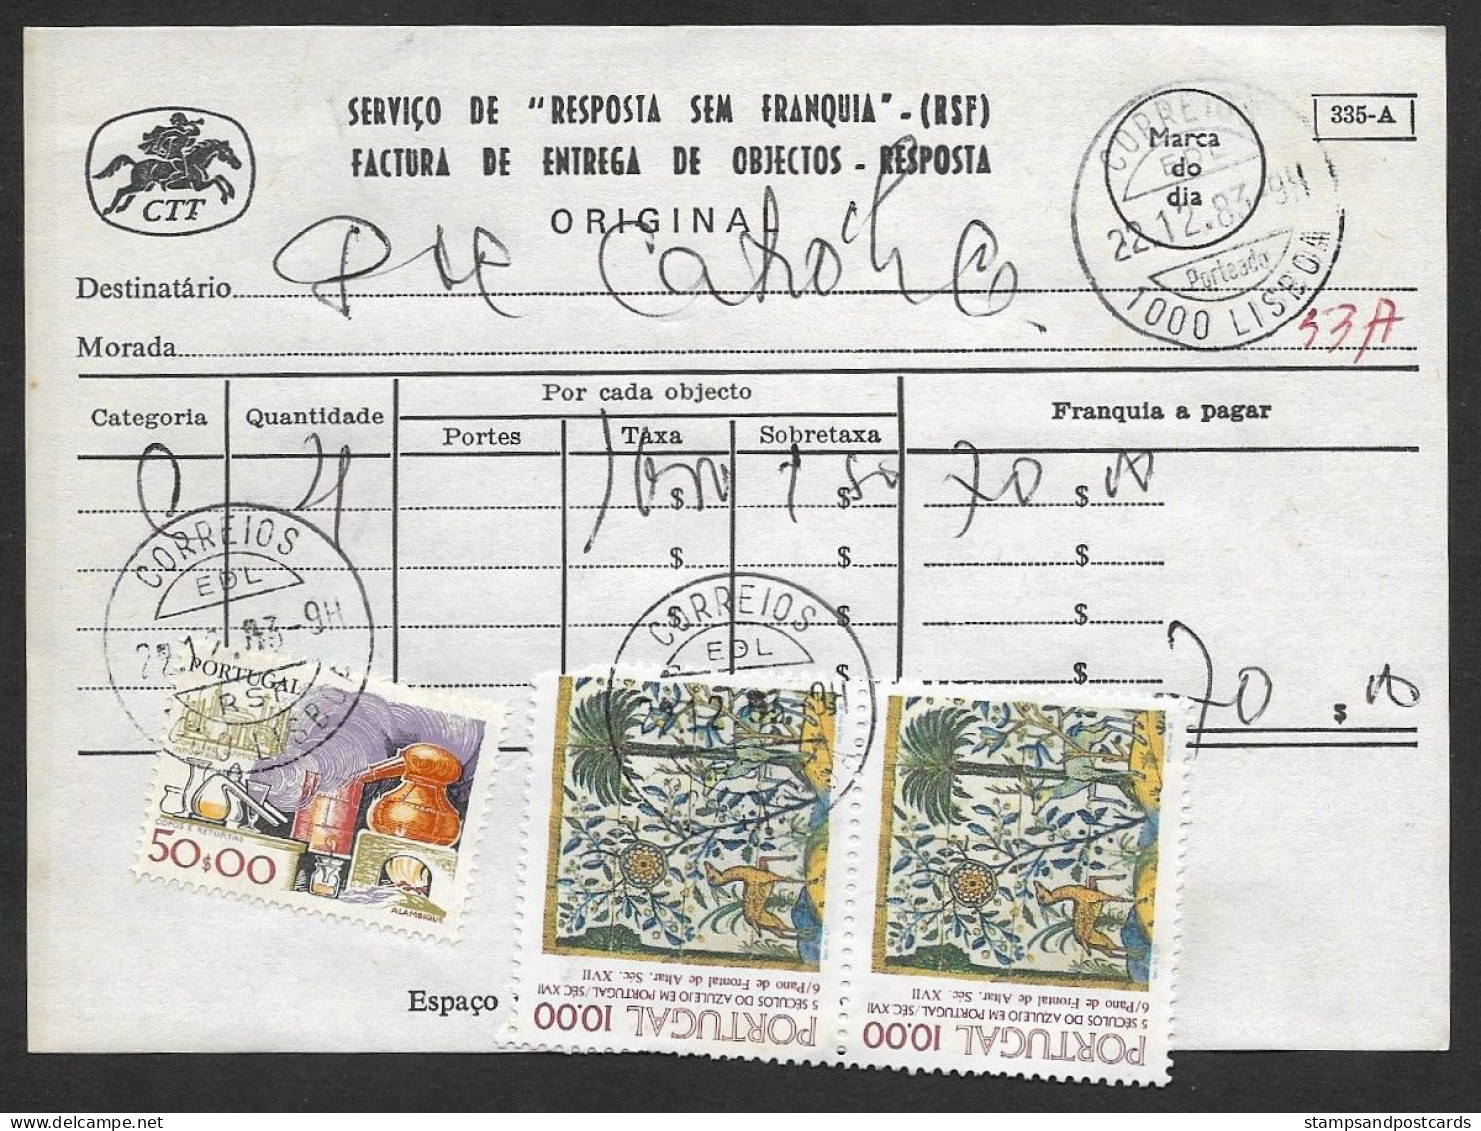 Portugal Document Timbré Avec Cachet A Date RSF Réponse Payée 1983 Date Stamp Business Reply Service - Marcofilia